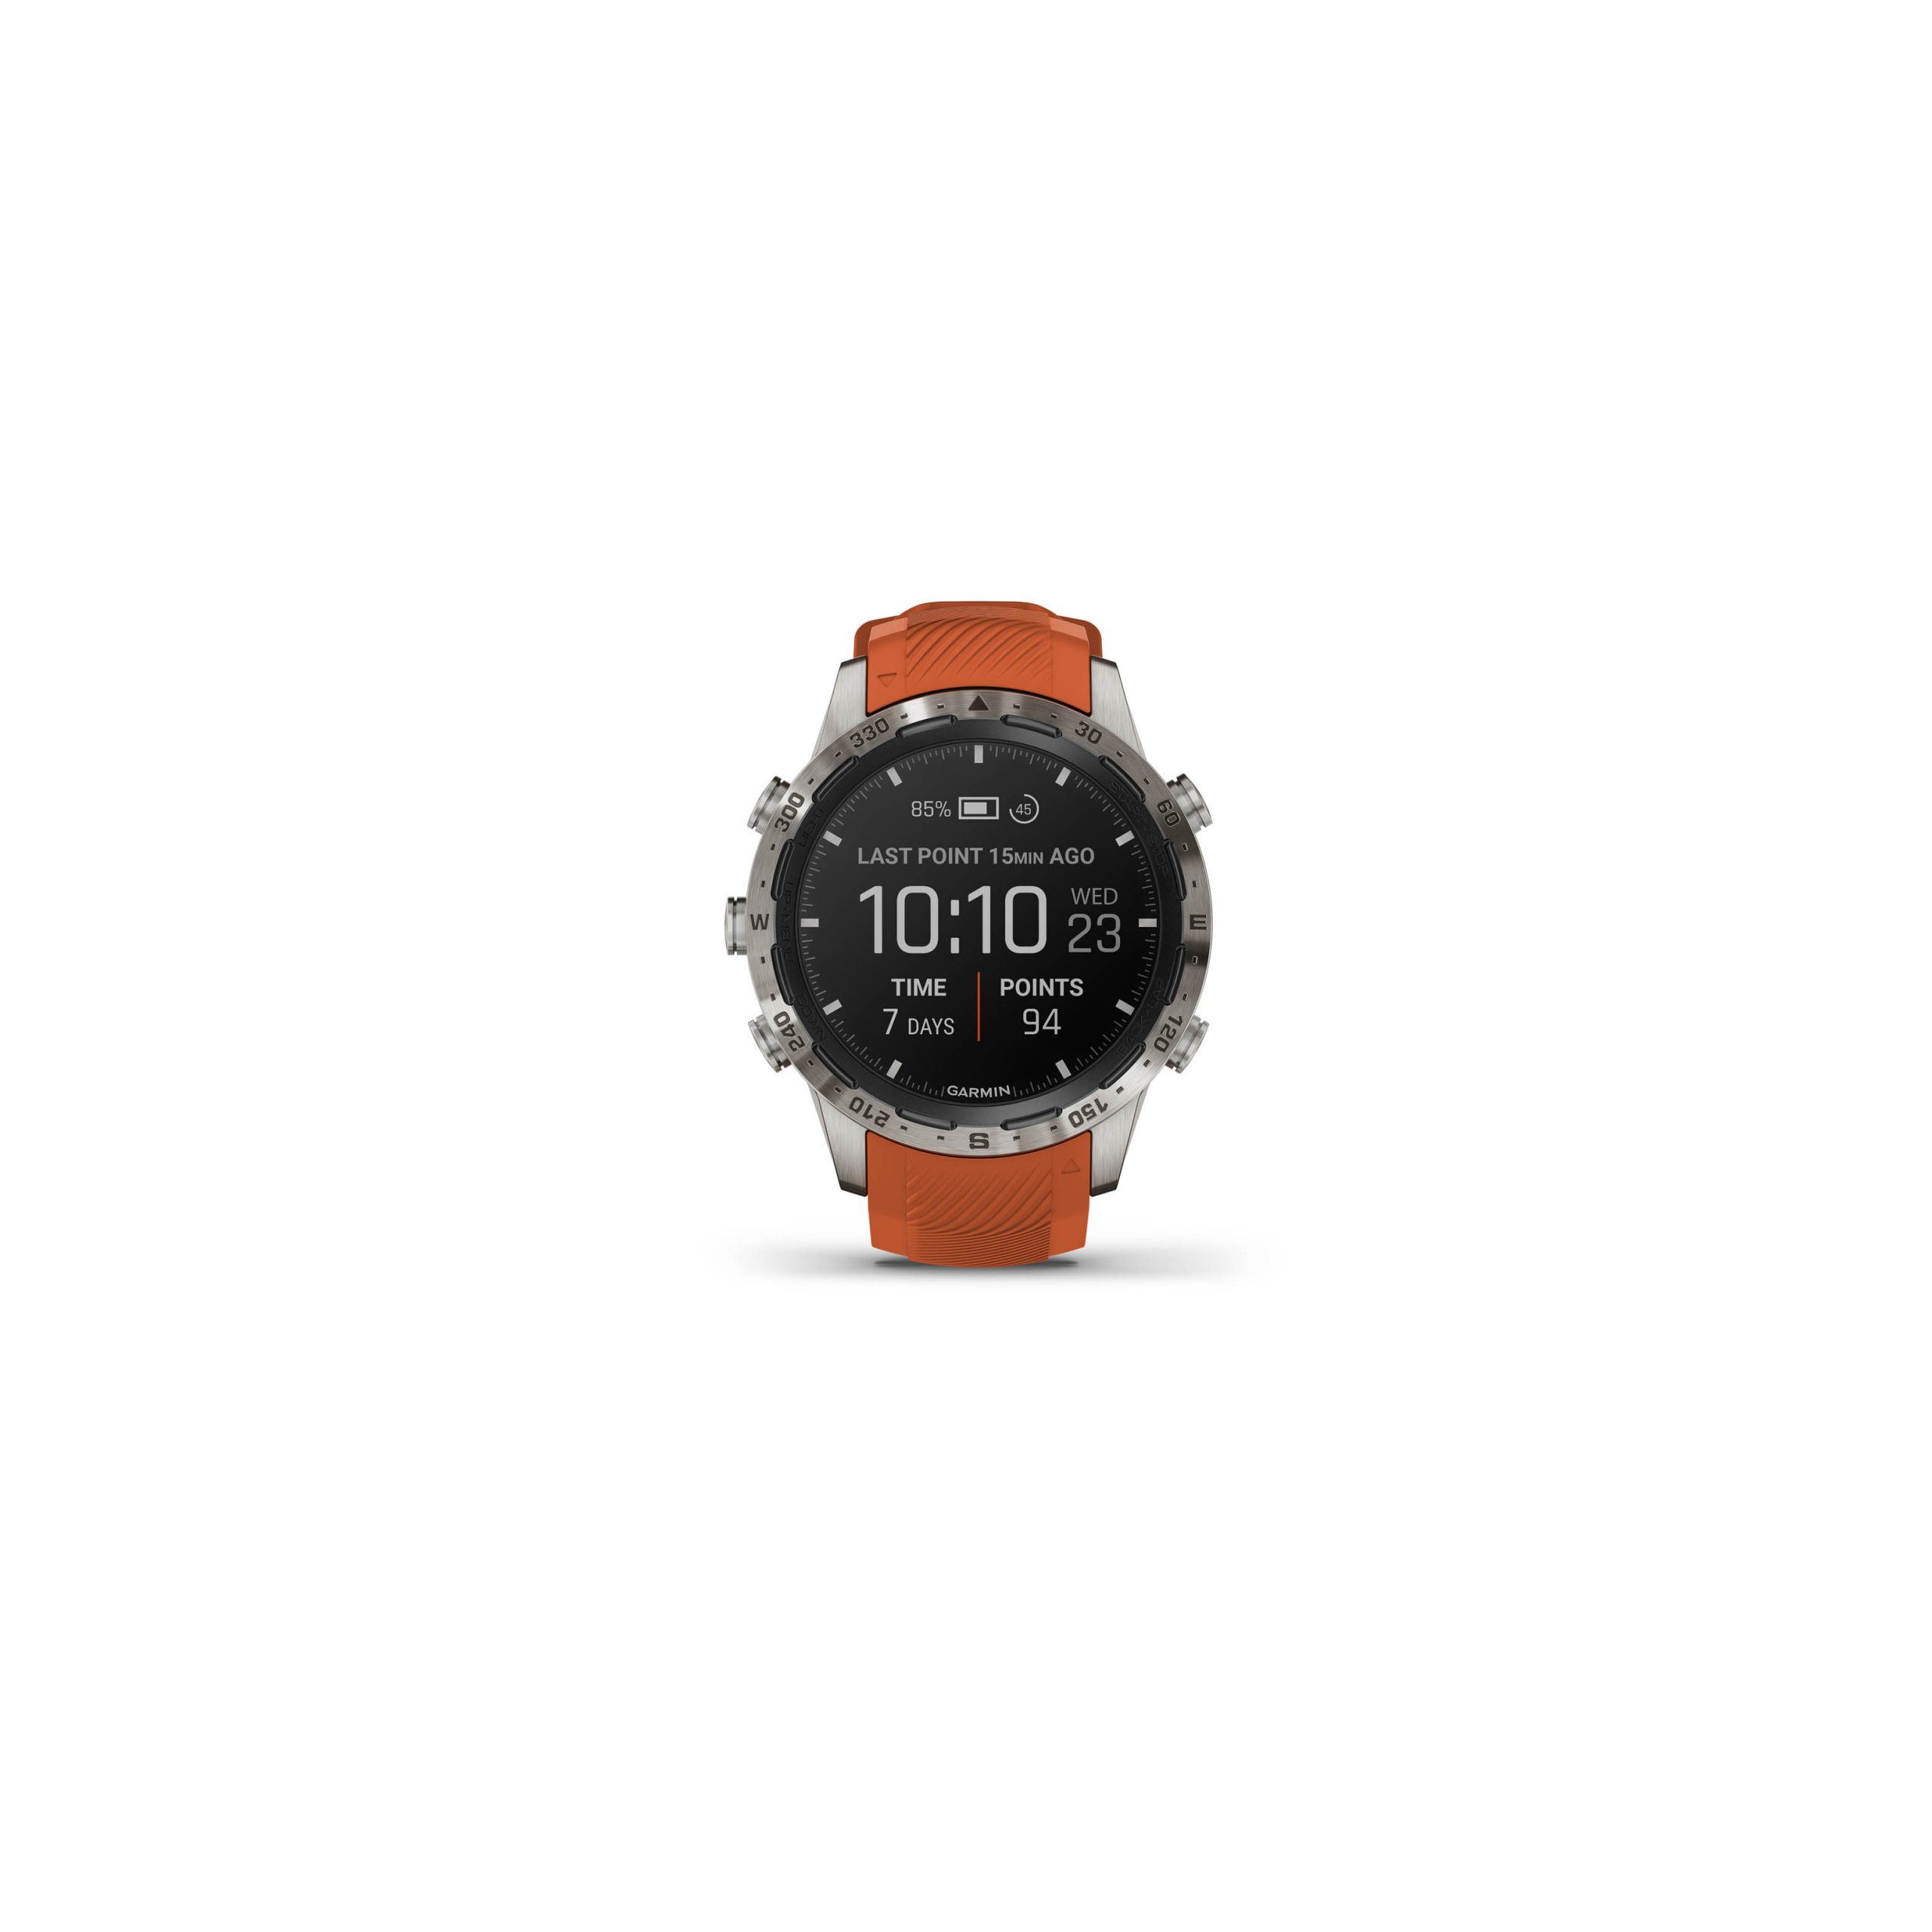 MARQ-Adventurer Performance Edition titanium smartwatch